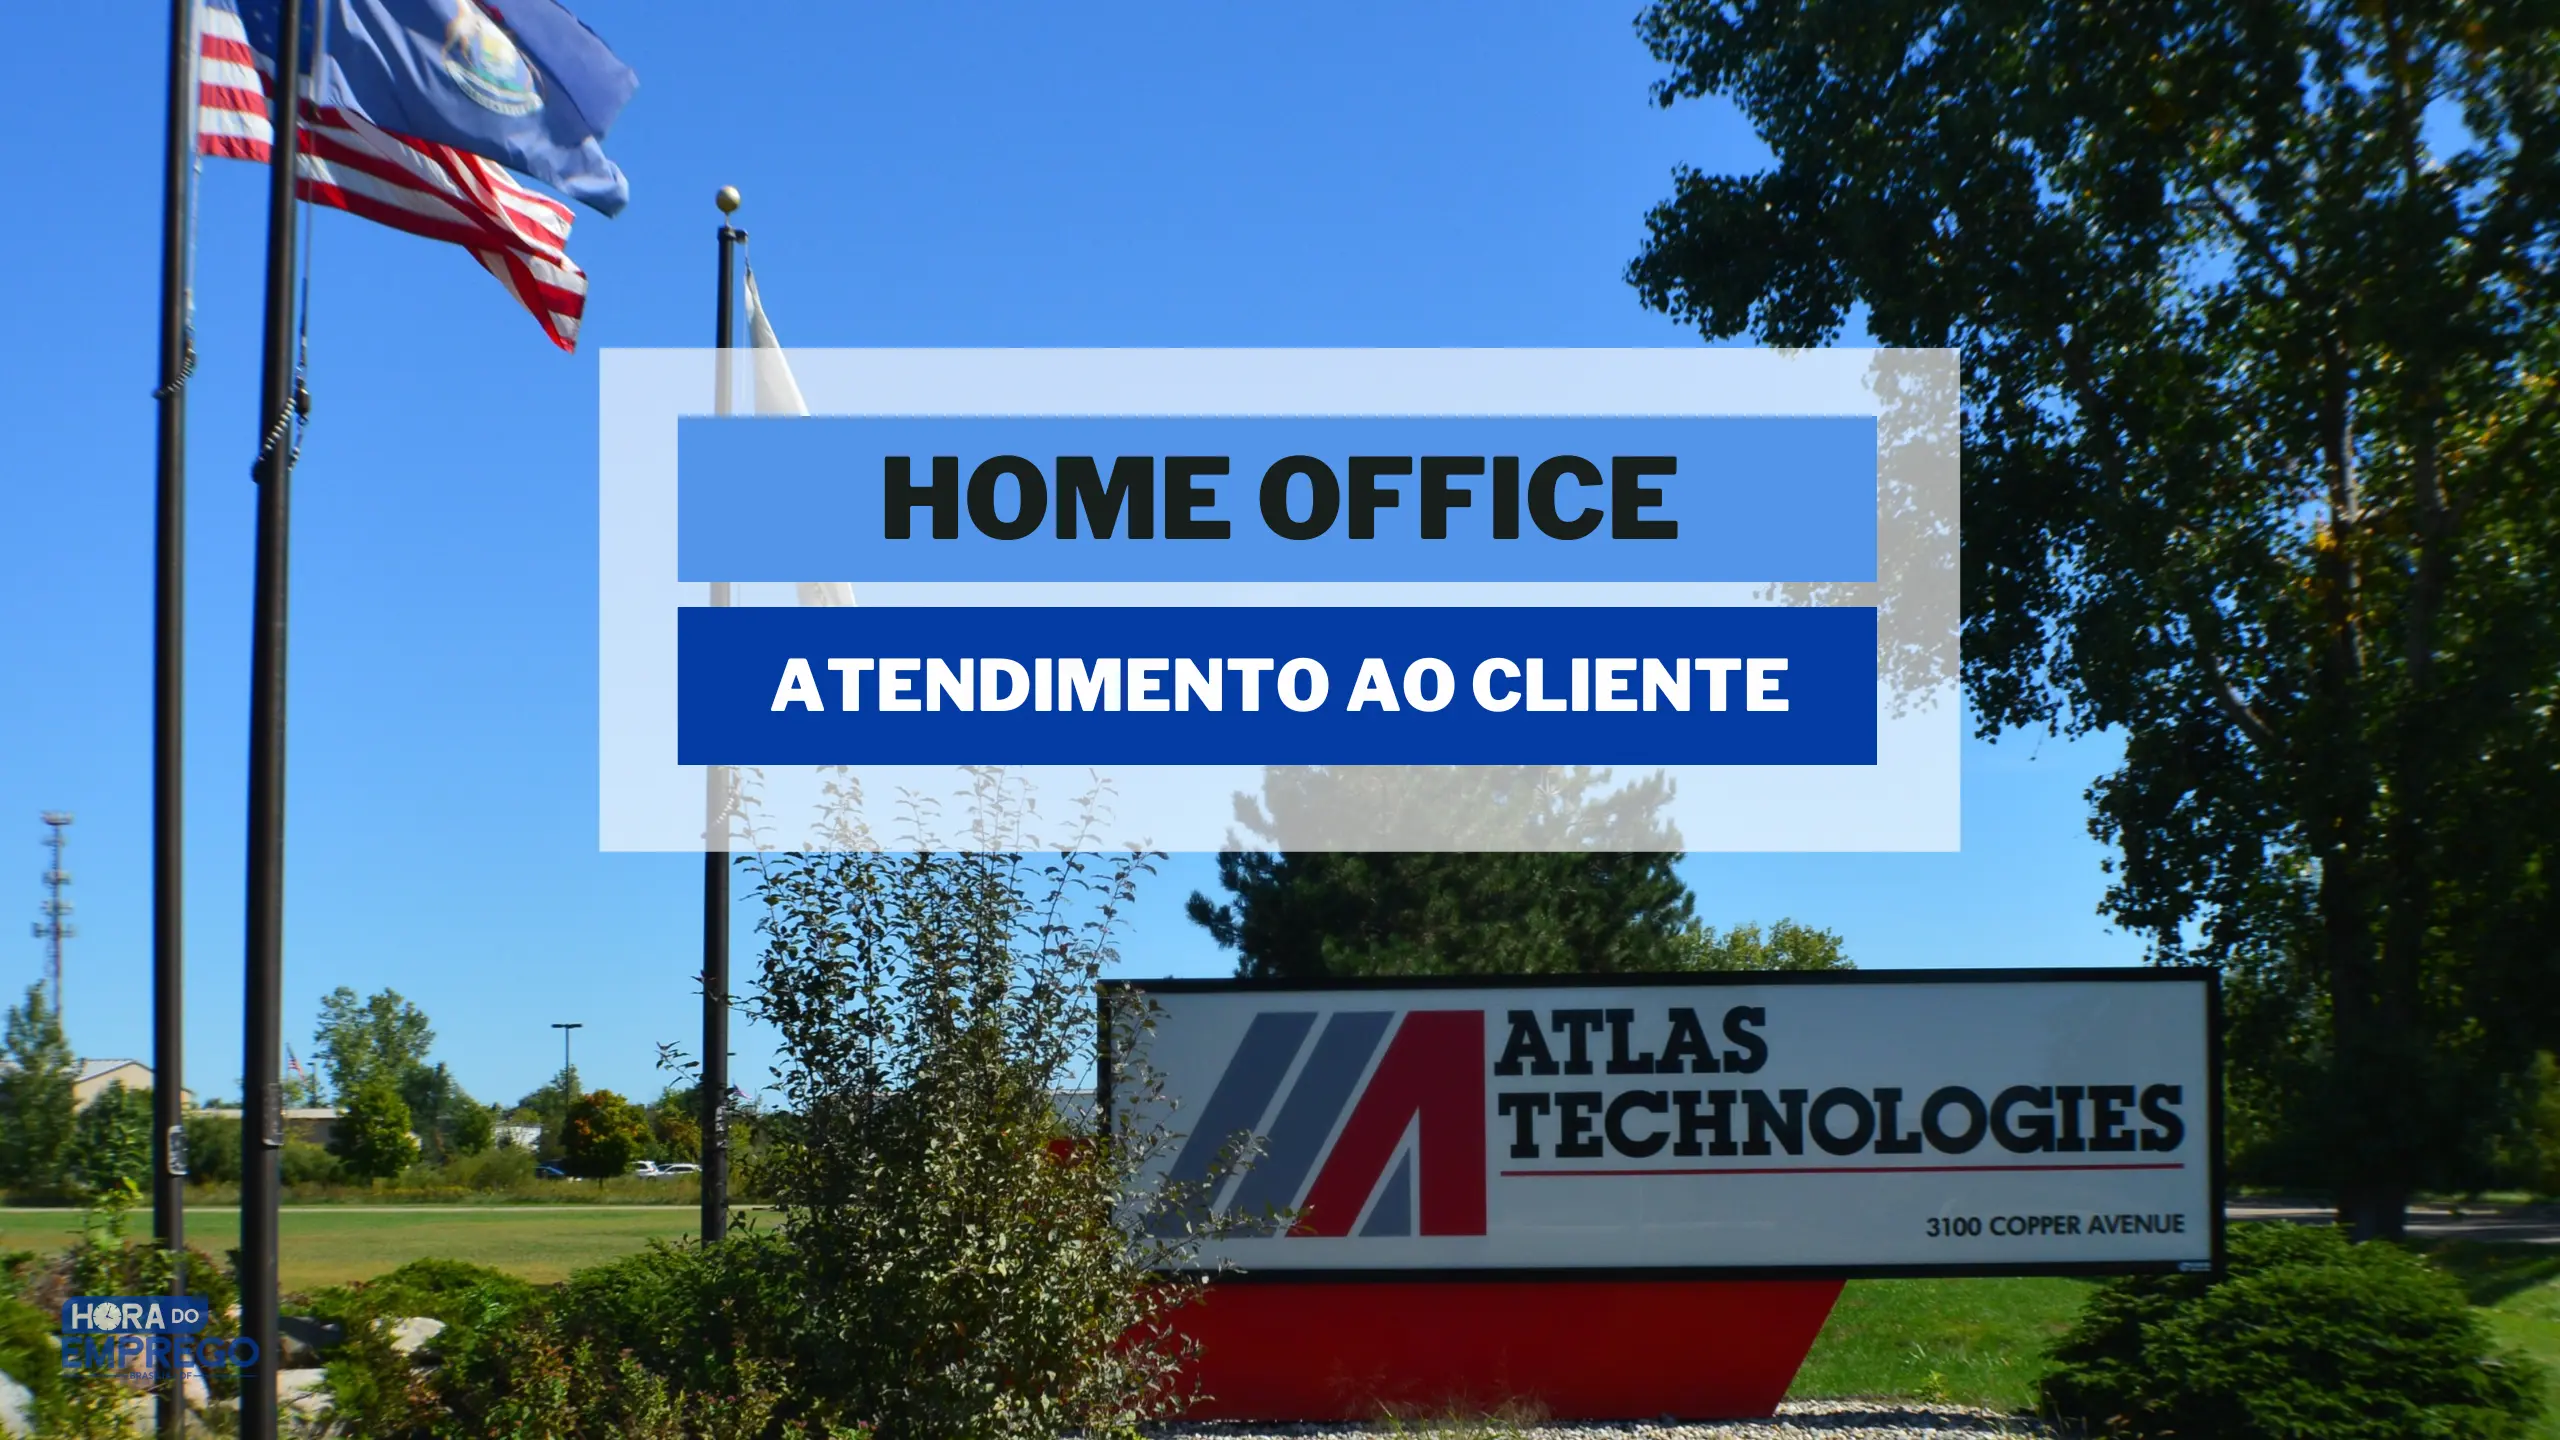 Atlas Technologies abriu vagas HOME OFFICE para TRABALHAR DE CASA no cargo de Assistente de Sucesso do Cliente